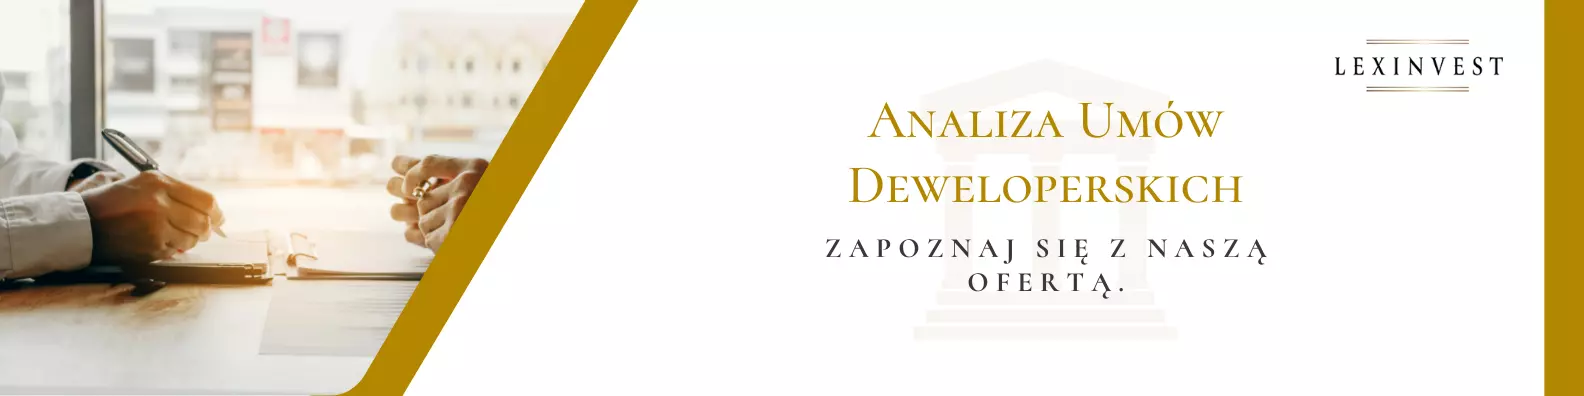 Analiza umowy deweloperskiej - Lexinvest - Kancelaria Adwokacka Warszawa